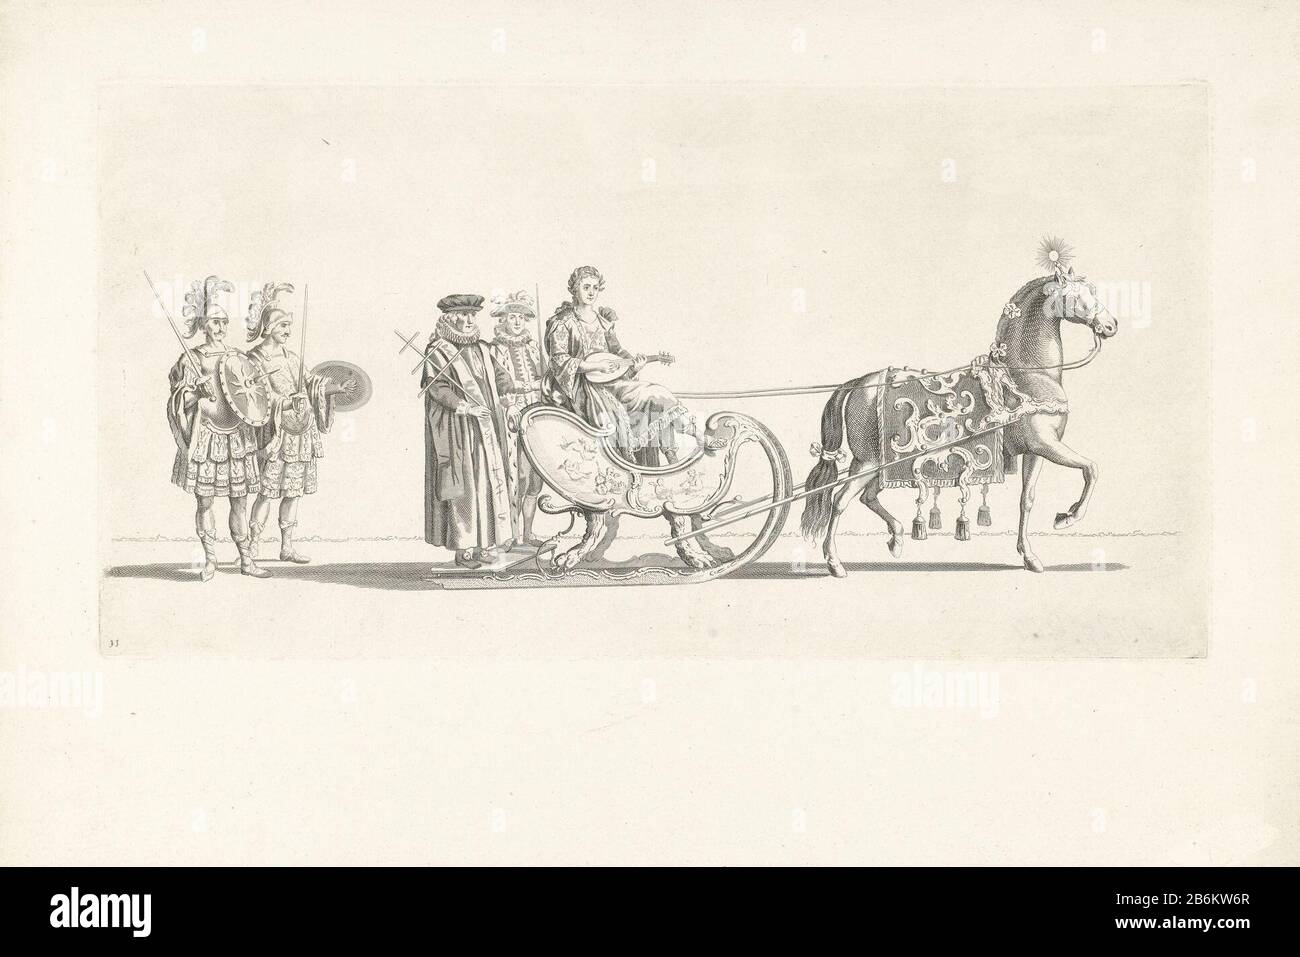 Undicesima carrozza a slitta Vaart della Leiden veniam Pro Laude Society nel 1776 (titolo della serie) l'undicesima carrozza nella parata. Una carrozza con la personificazione della Musica, trainata da un cavallo, seguita da due soldati romani. Parte di una serie di dodici piatti della navigazione a scorrimento il 24 gennaio 1776 organizzata dalla Leiden Society veniam Pro Laude in occasione del Secondo Centenario del rilievo di Leiden (3 ottobre 1574) e della fondazione dell'Università di Leida (8 febbraio 1575) . Produttore : stampatore: Nicolaas van der Worm disegno: Abraham DelfosPlats prodotto: No Foto Stock